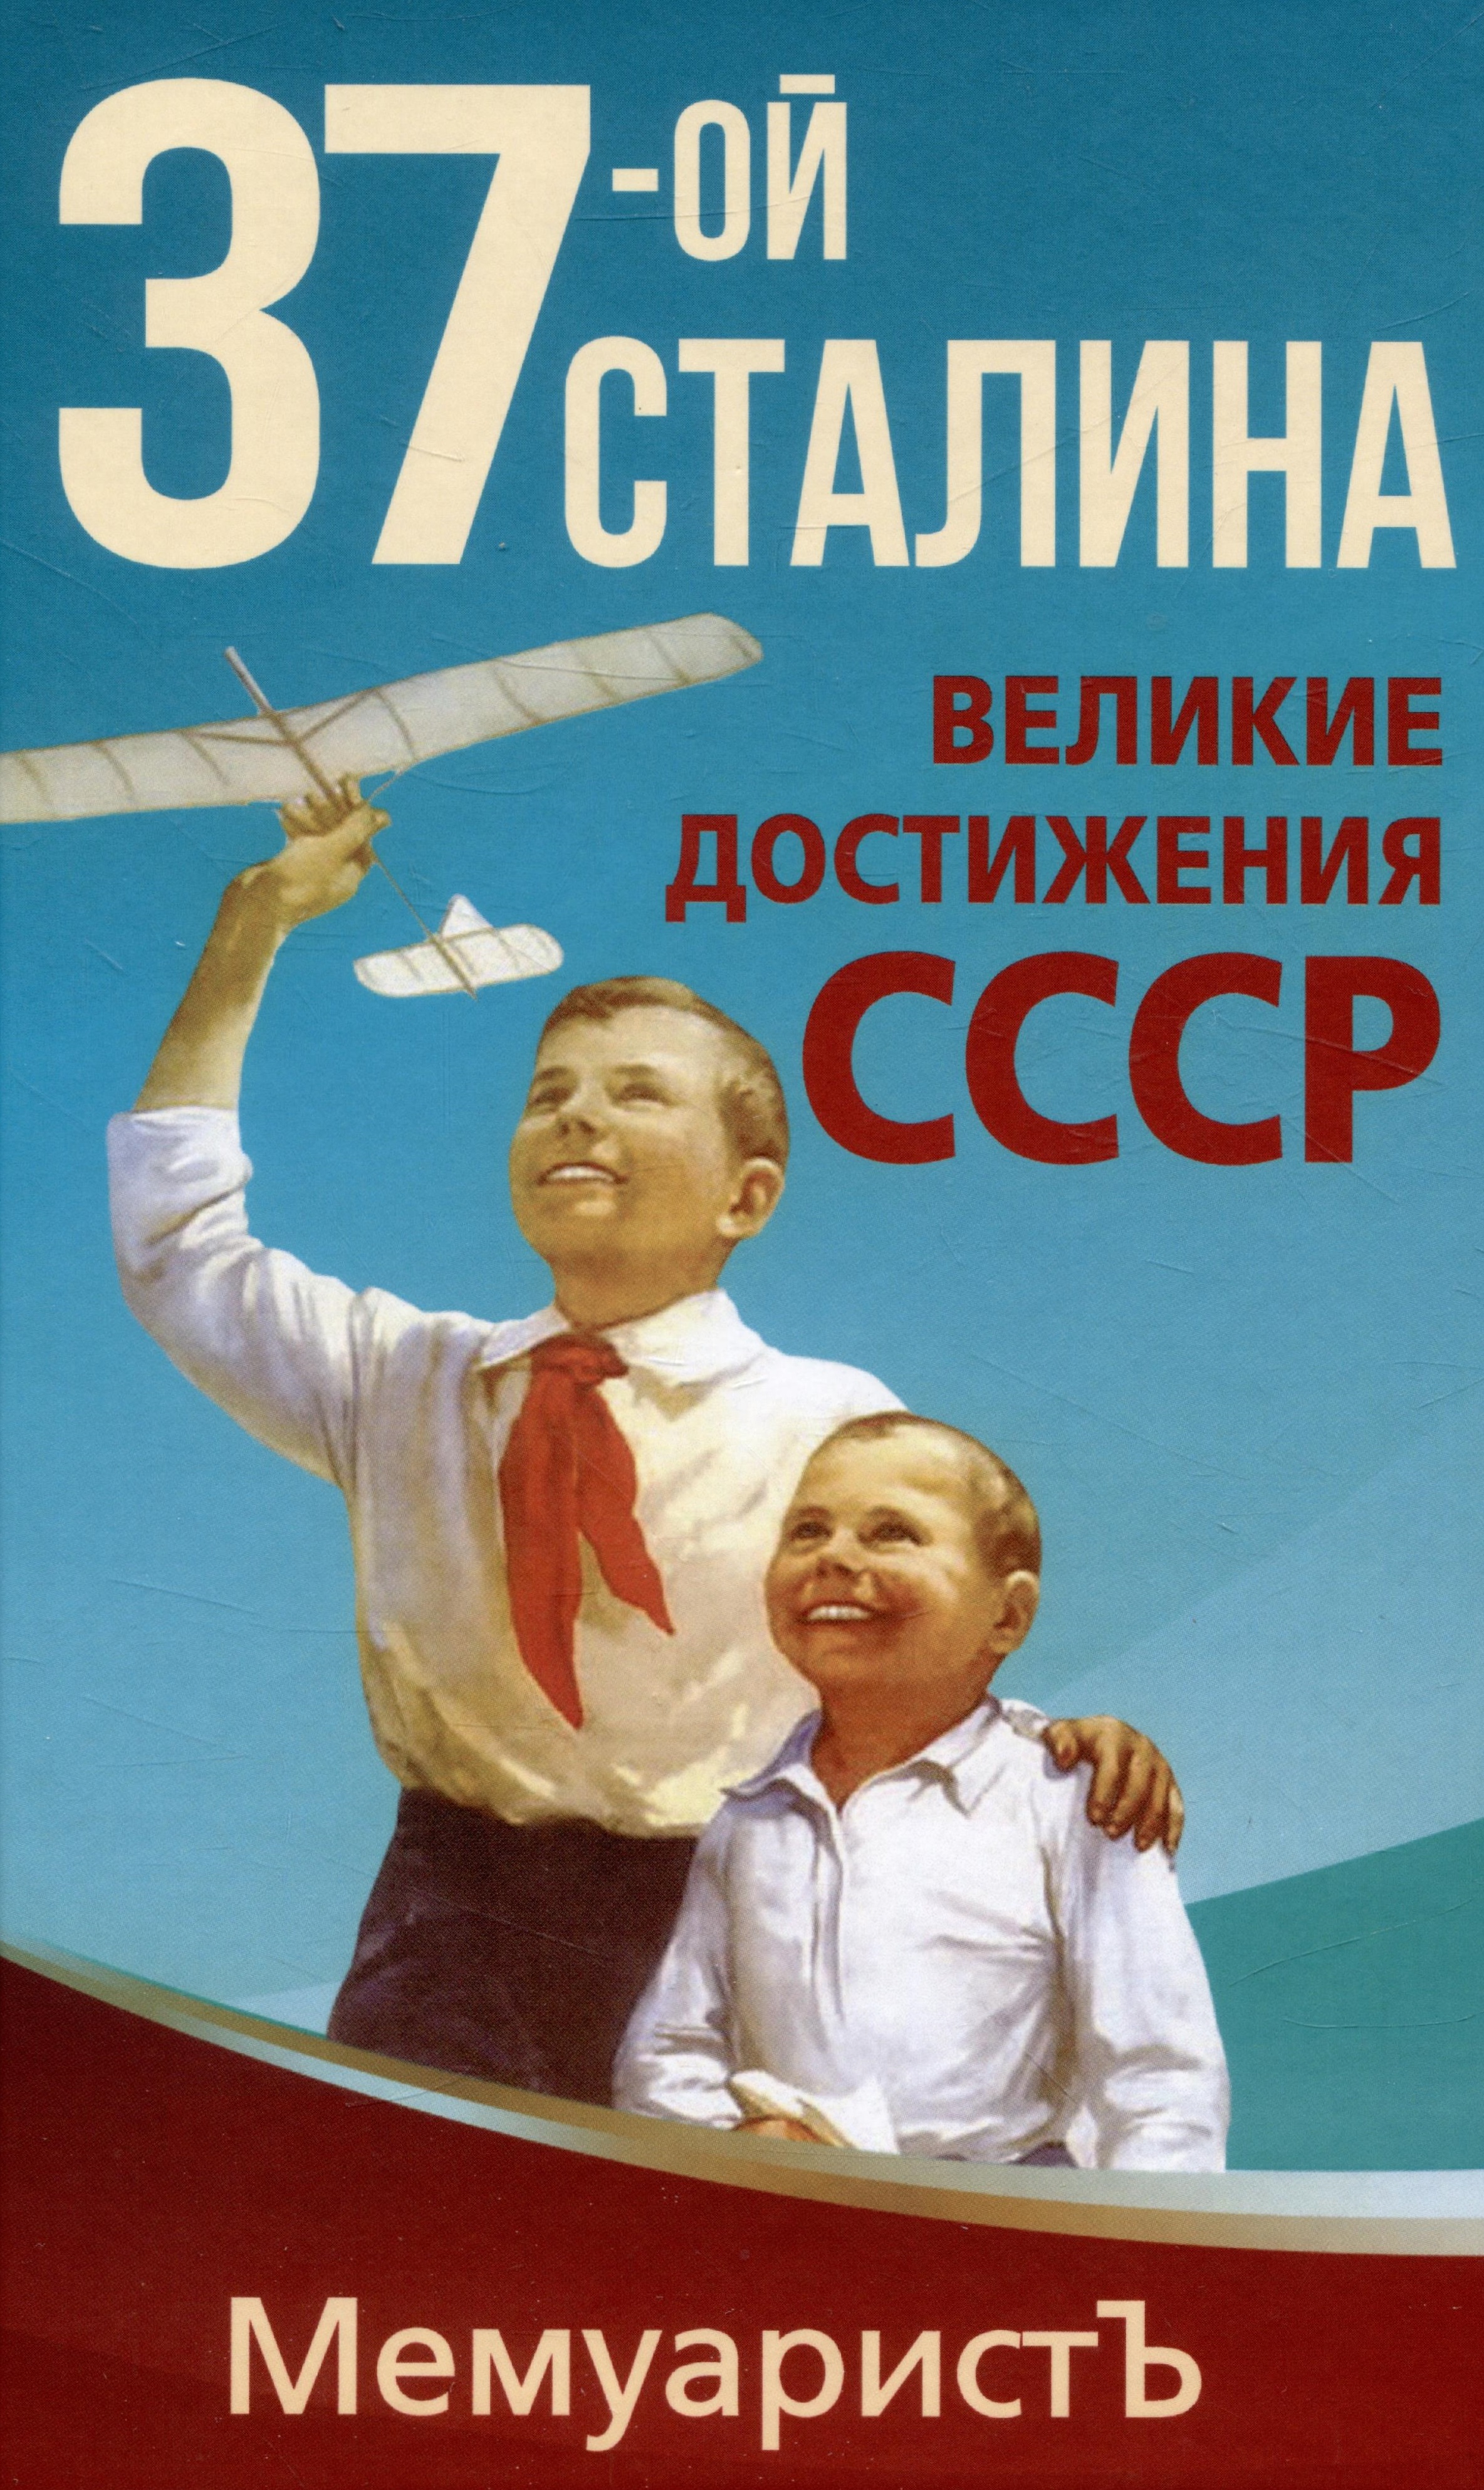 МемуаристЪ - 1937-ой Сталина. Великие достижения СССР